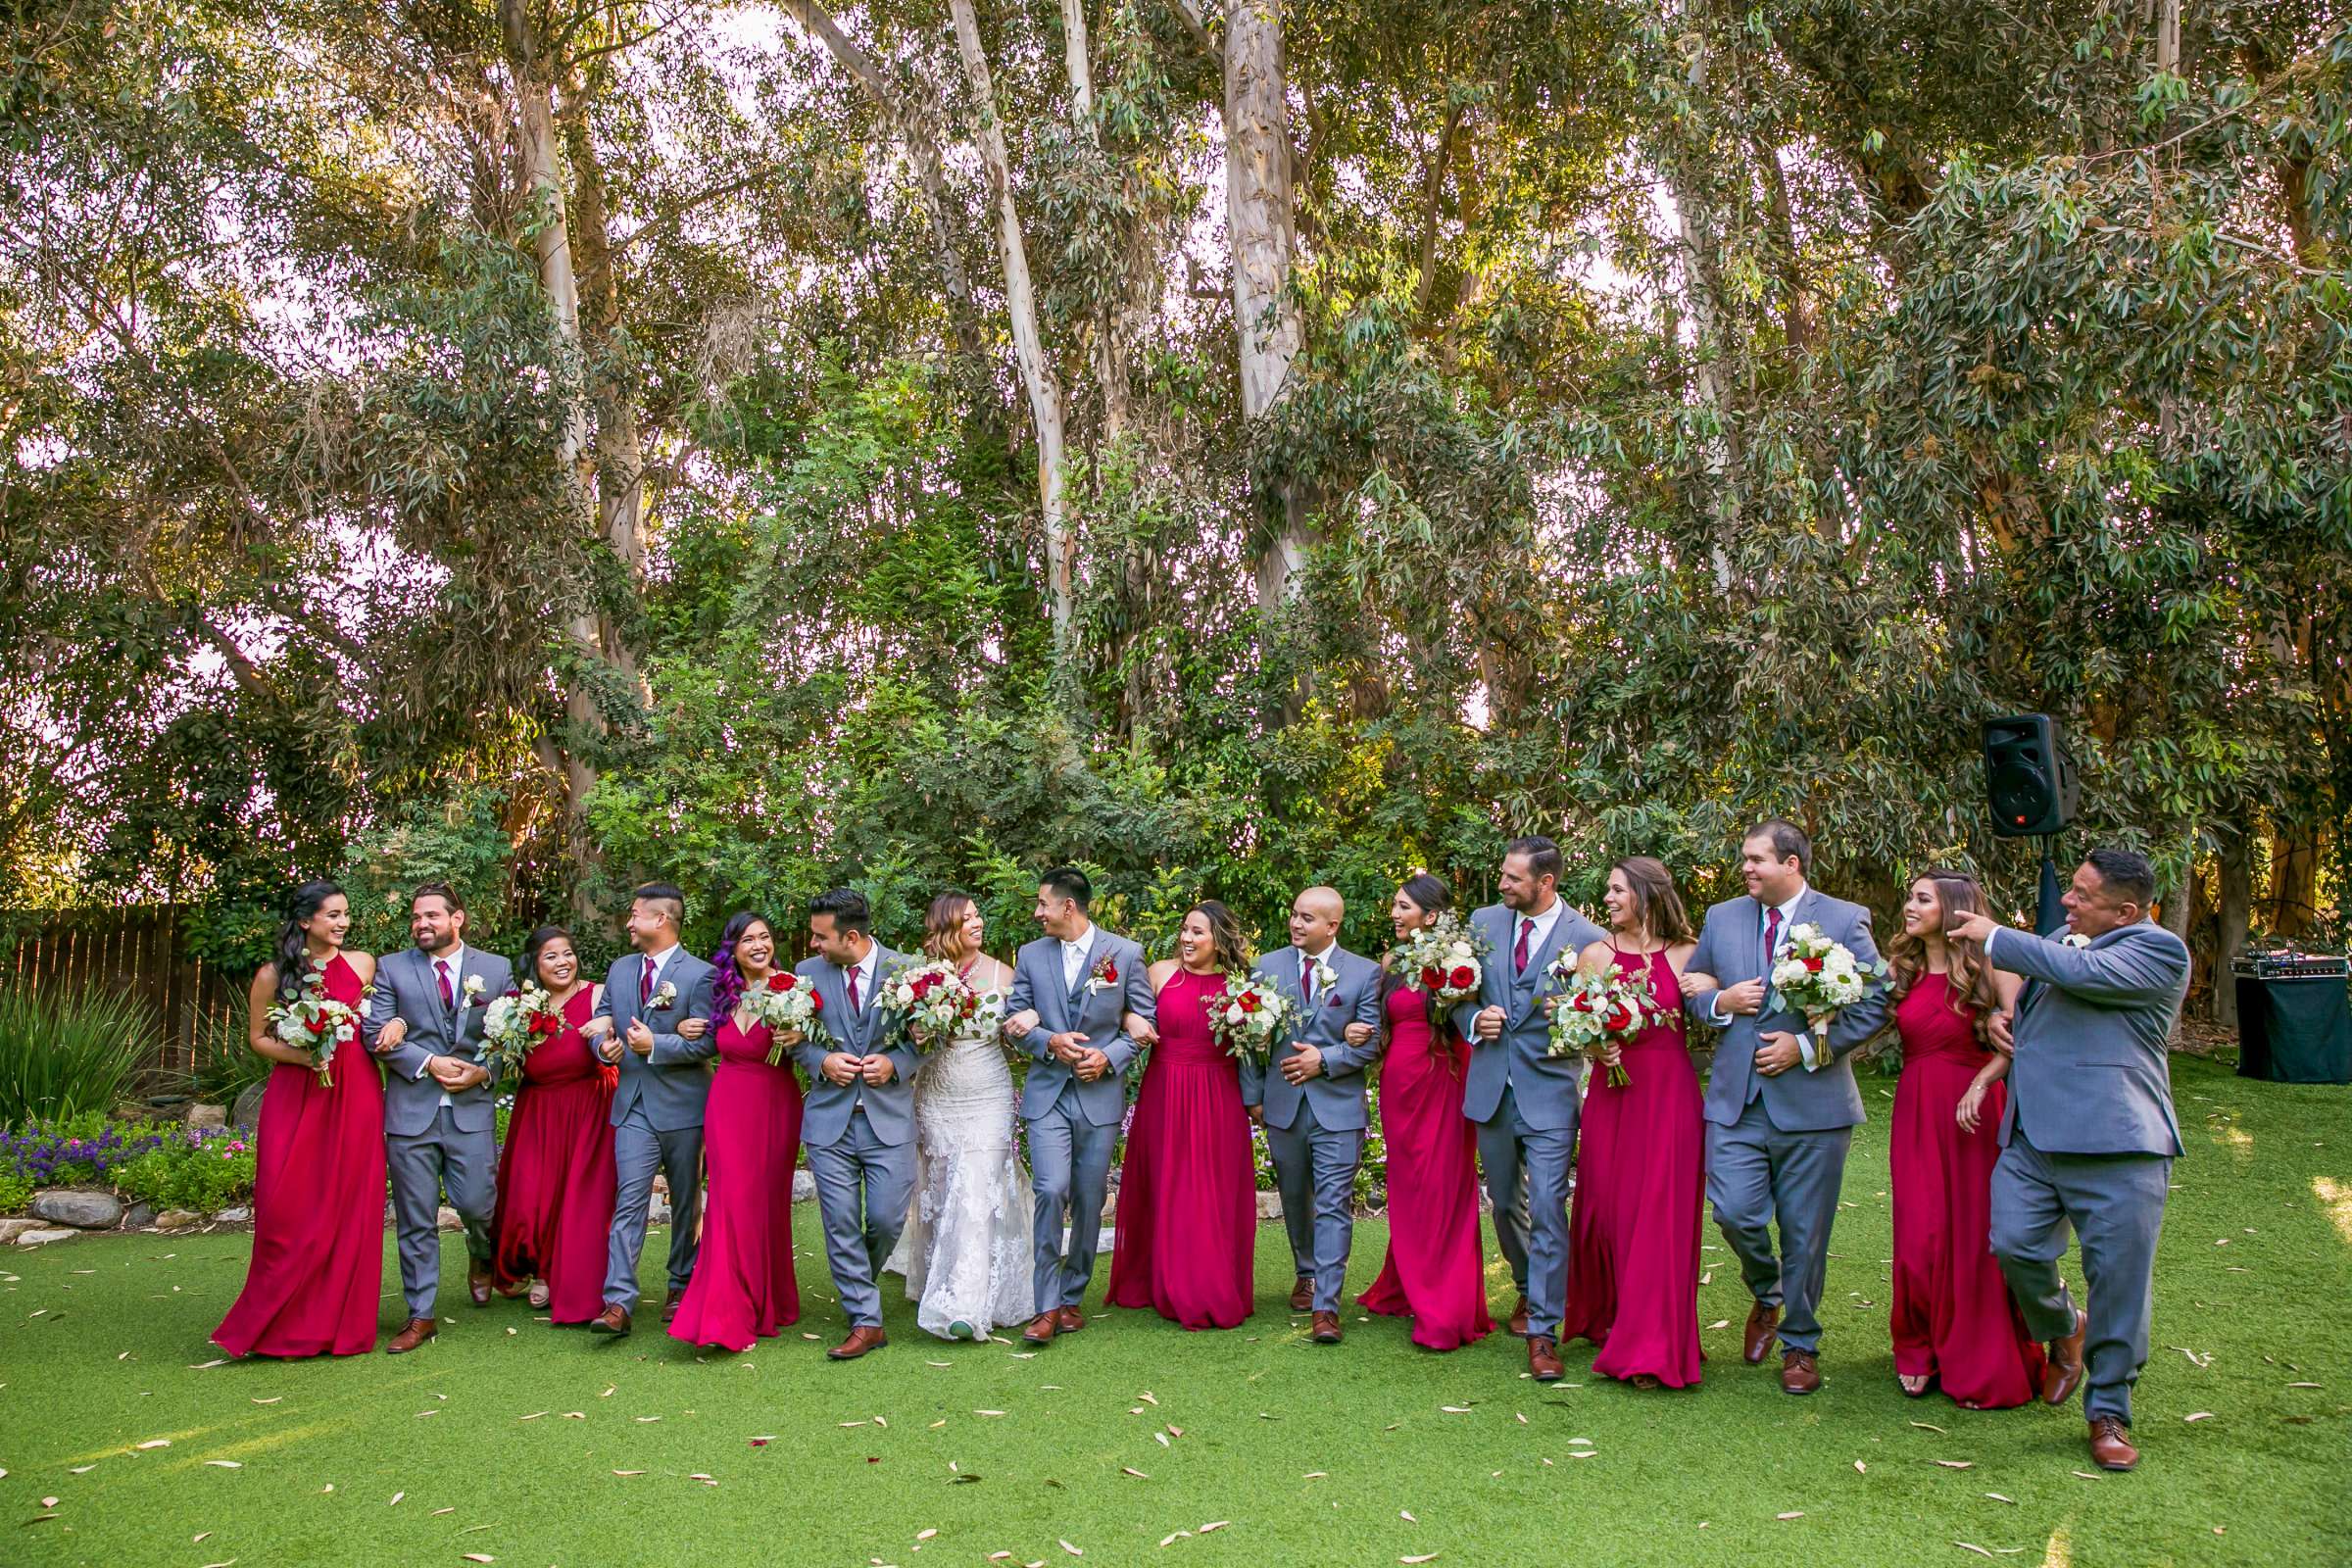 Twin Oaks House & Gardens Wedding Estate Wedding, Merrilynn and Trey Wedding Photo #7 by True Photography